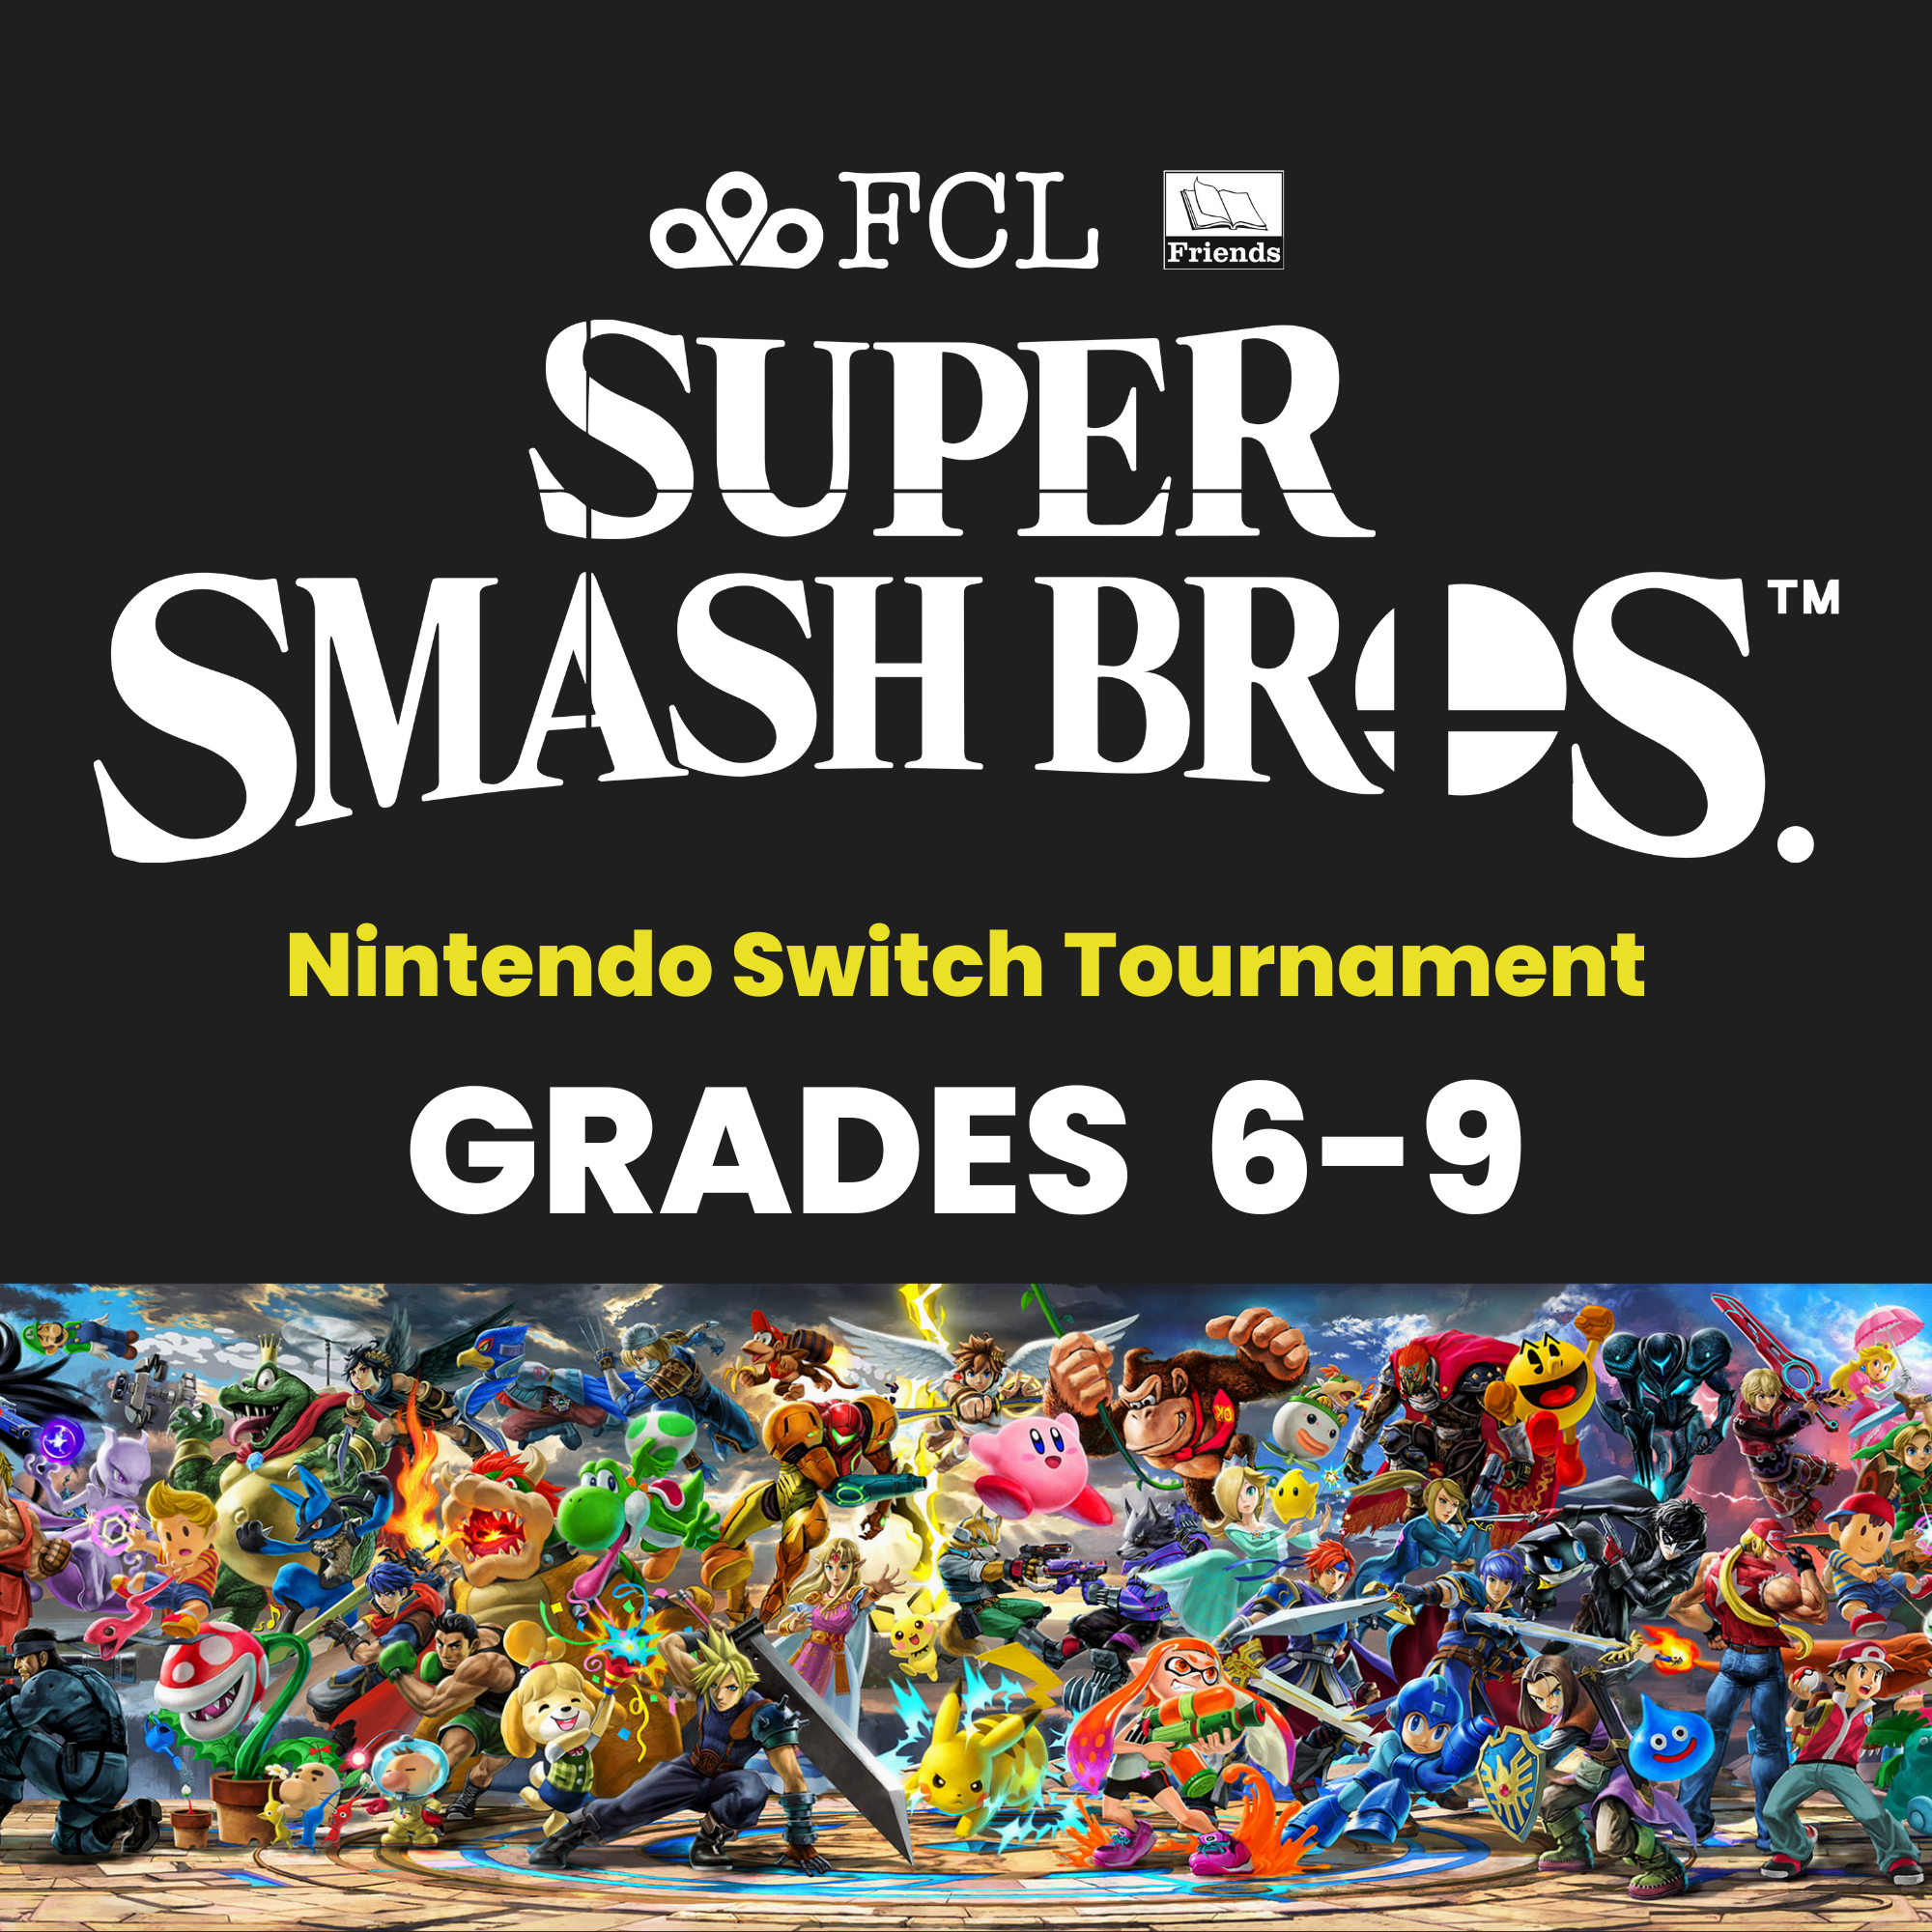 Super Smash Bros. Nintendo Switch Tournament (Grades 6-9)